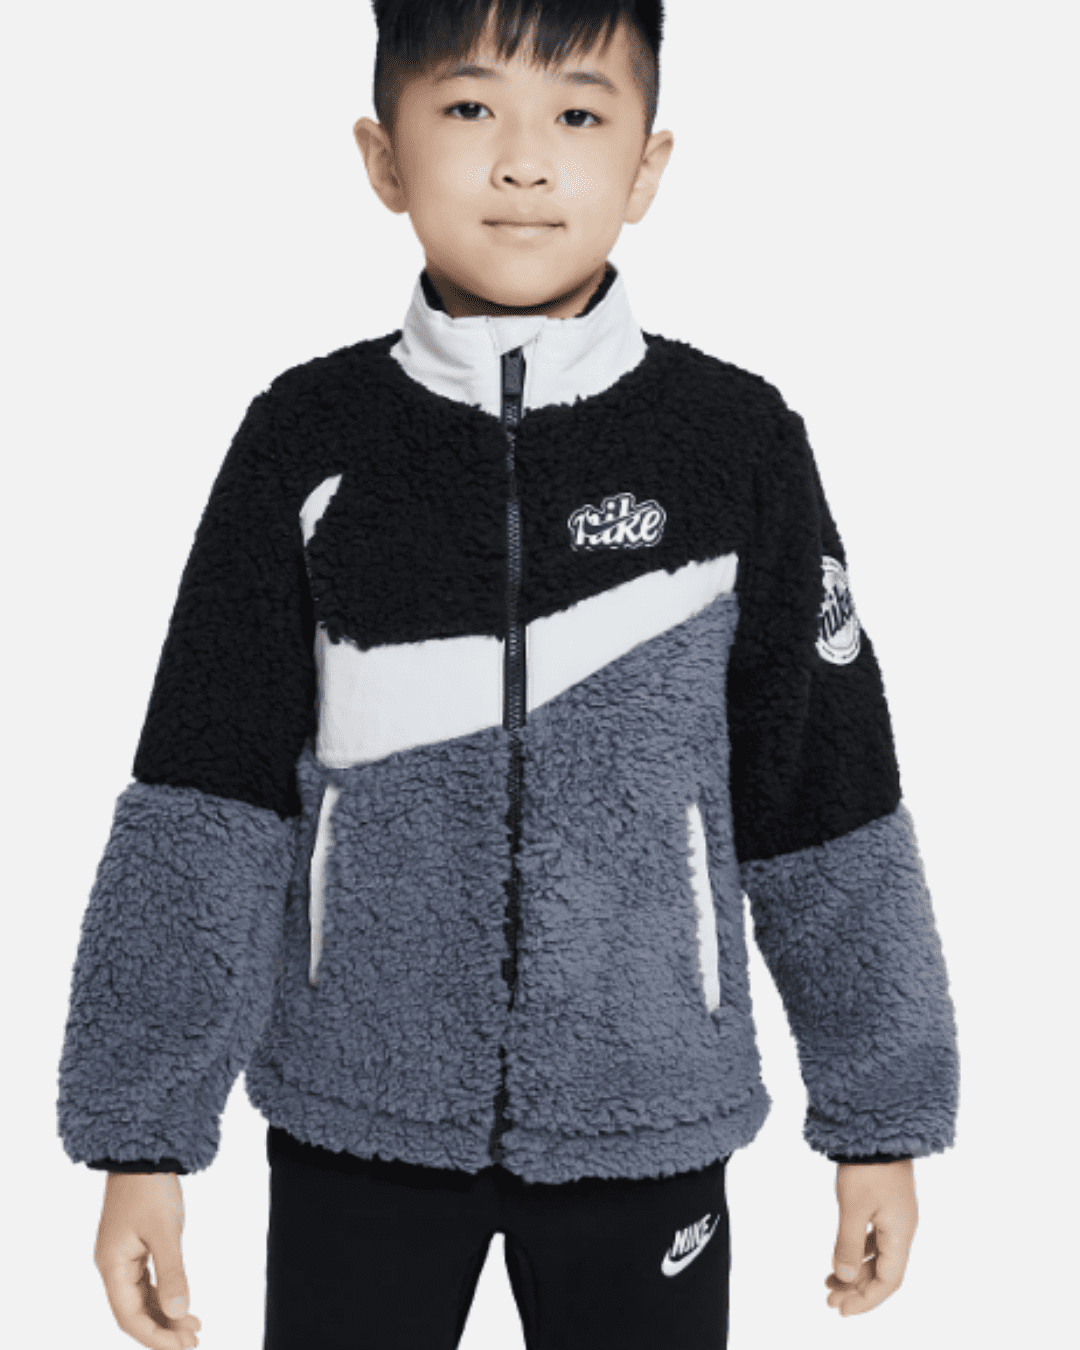 http://www.footkorner.com/cdn/shop/products/footkorner-veste-nike-sherpa-jacket-enfant-noir-gris-86j734-023_1.png?v=1678358855